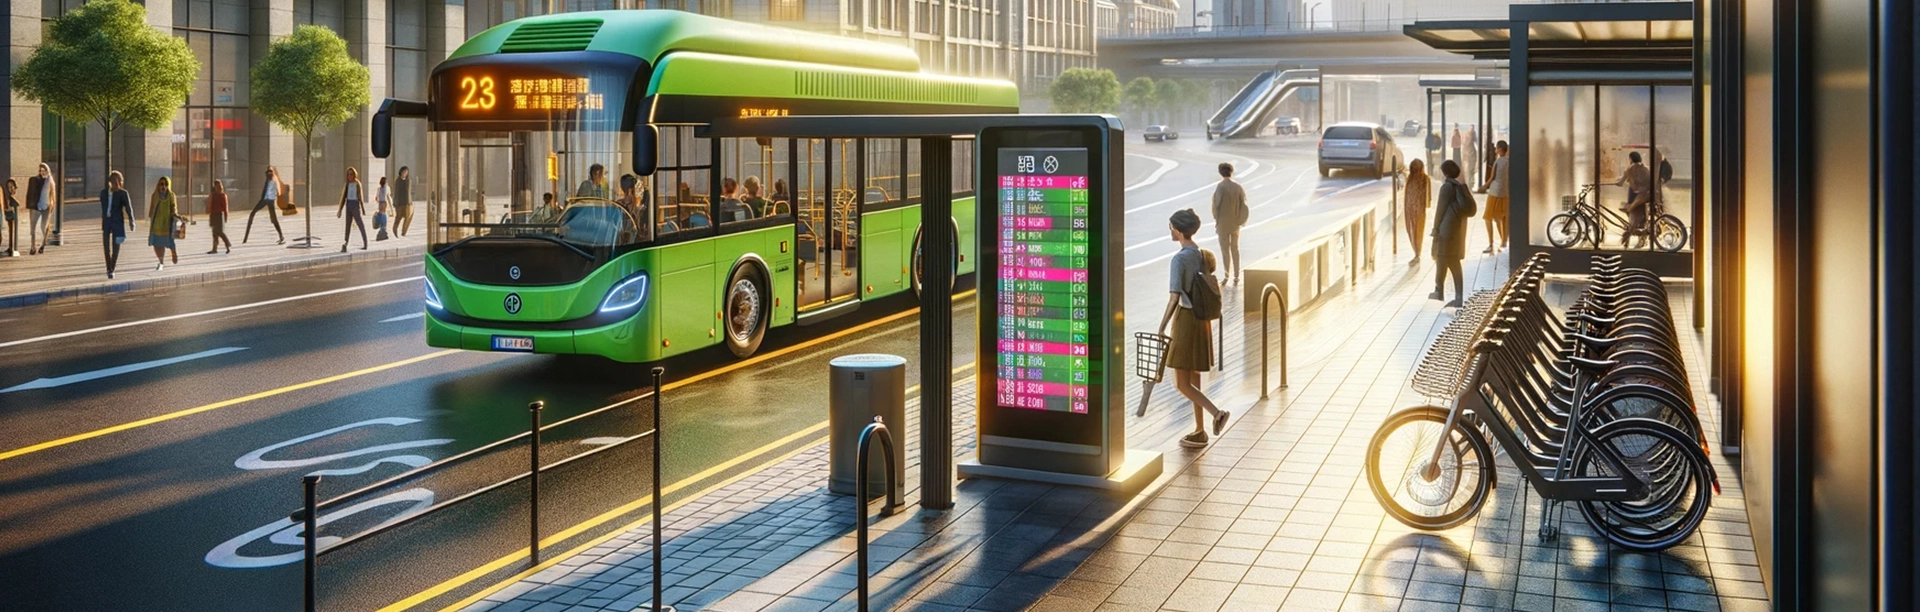 שיפור תפעול האוטובוסים וחווית הנוסעים:<br>ההשפעה של מערכות לספירת קהל